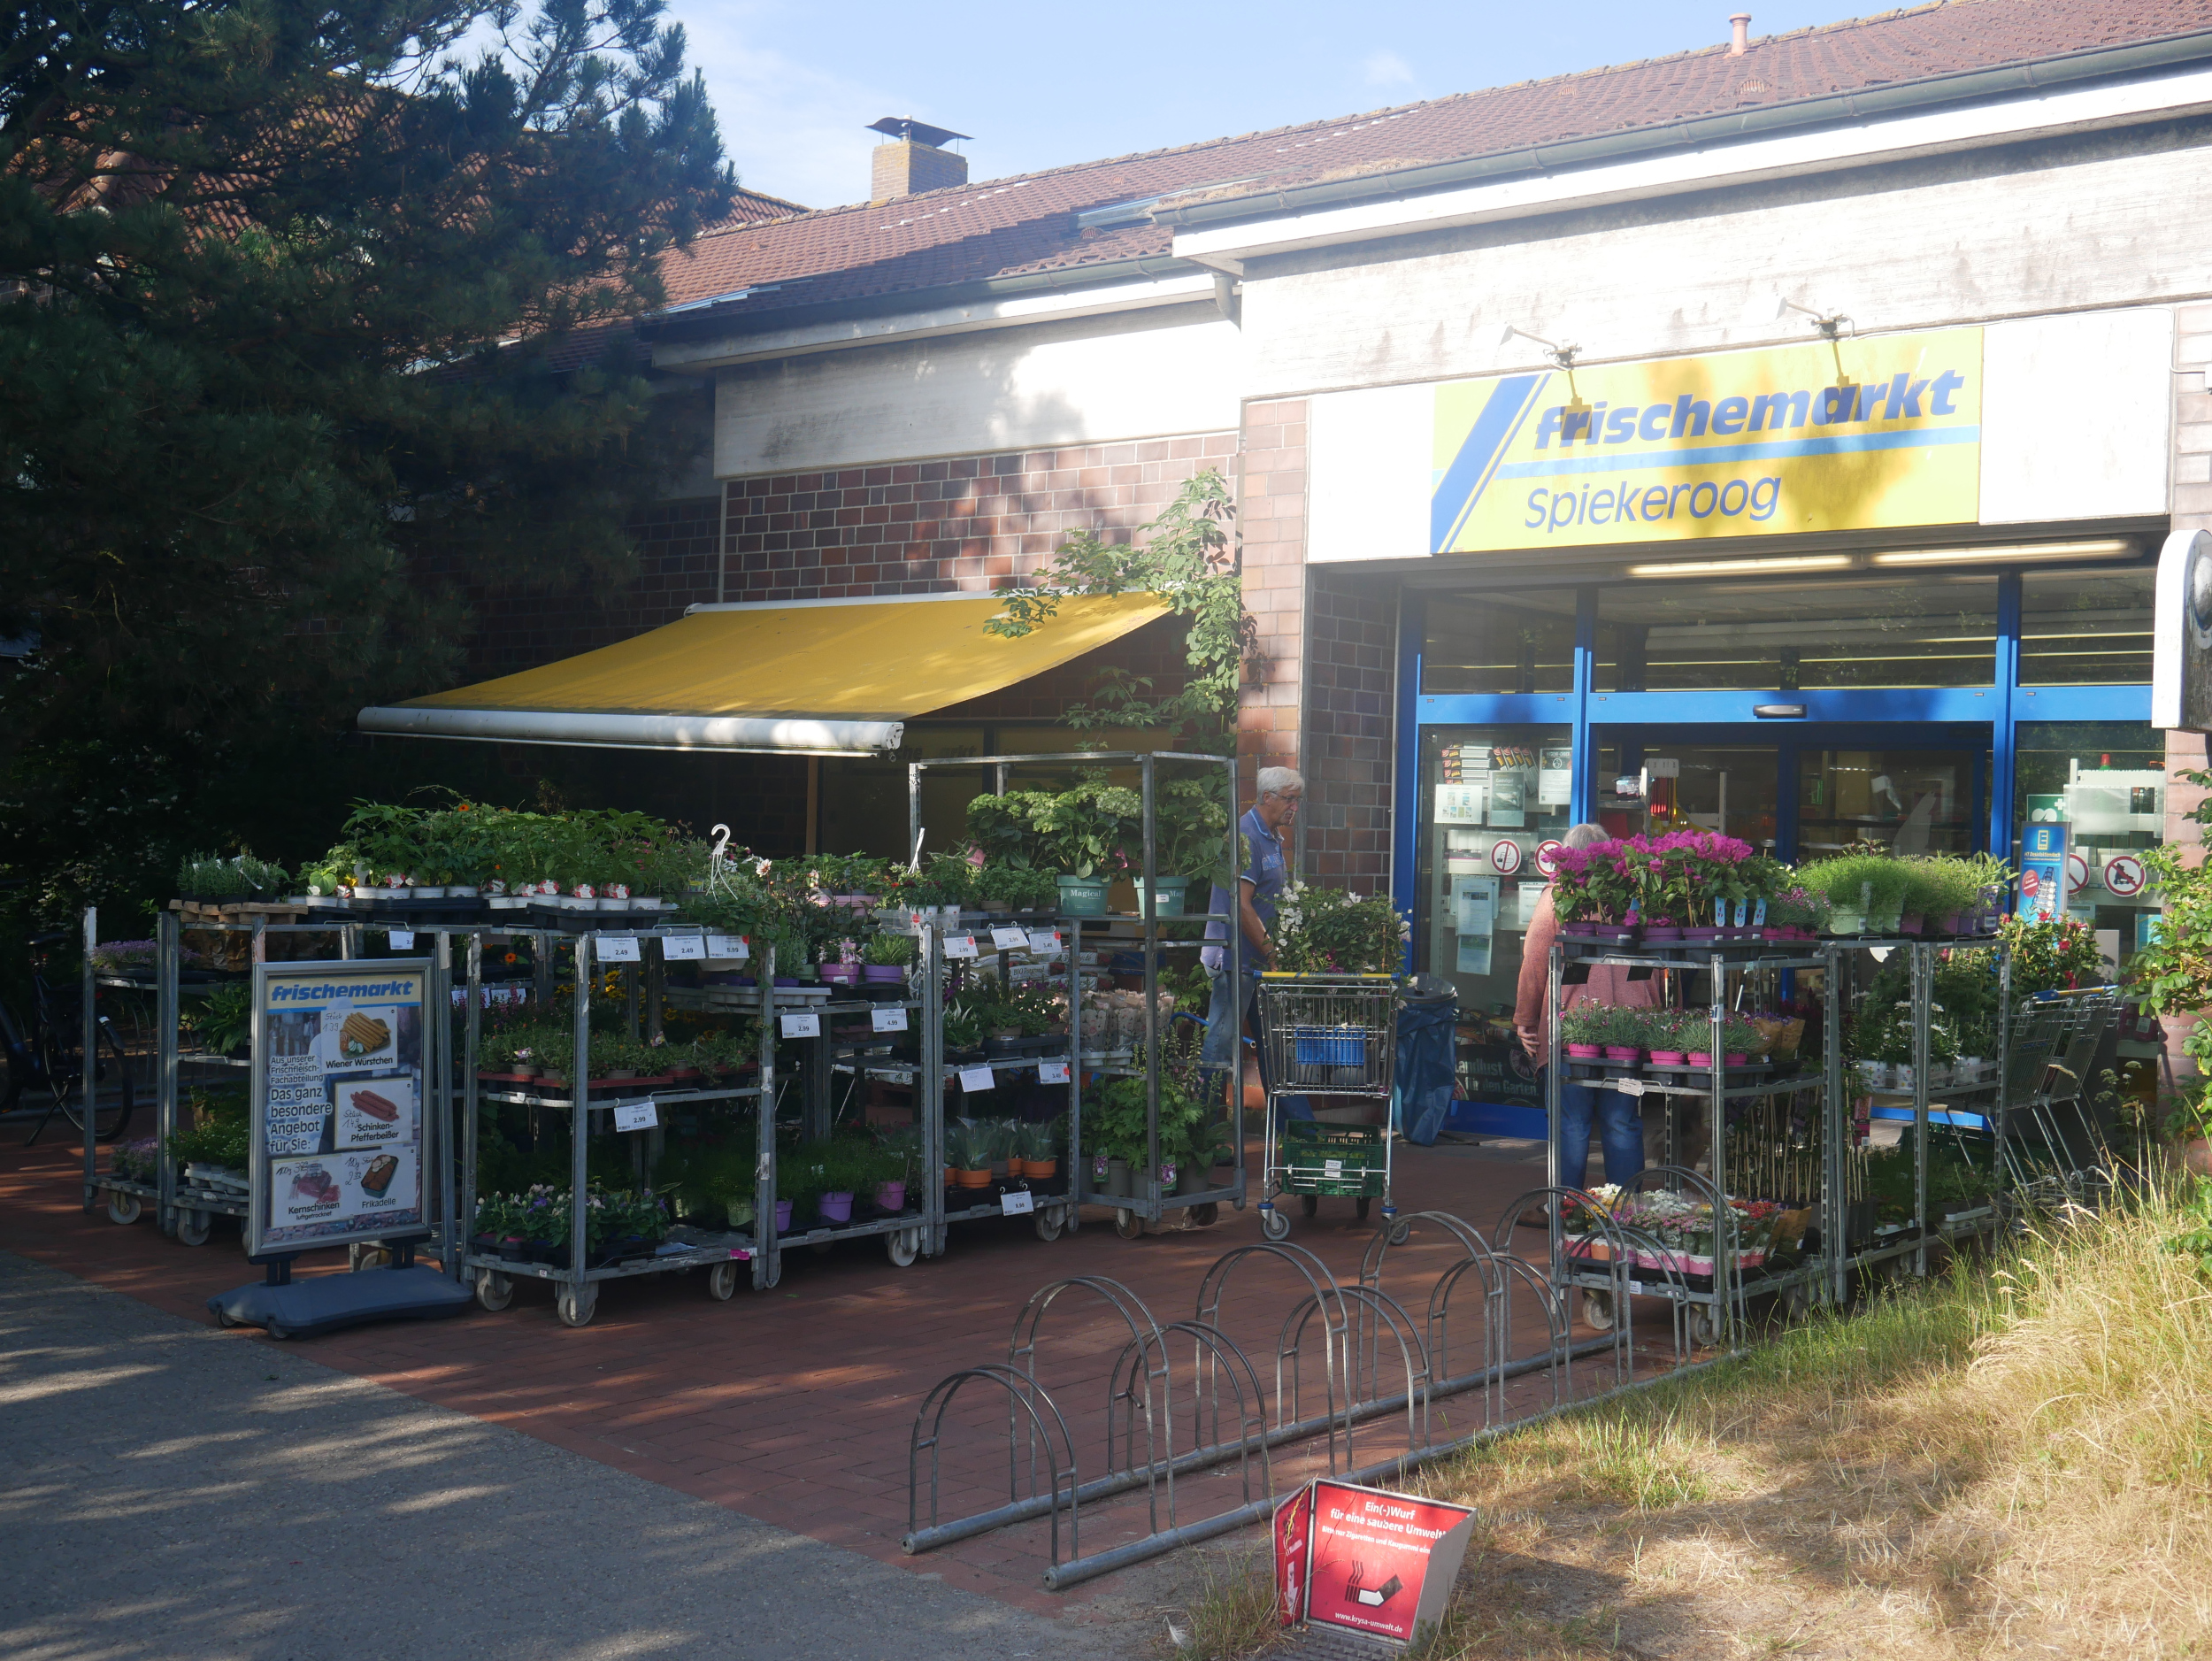 Der Eingang des Edeka Frischemarktes auf Spiekeroog.